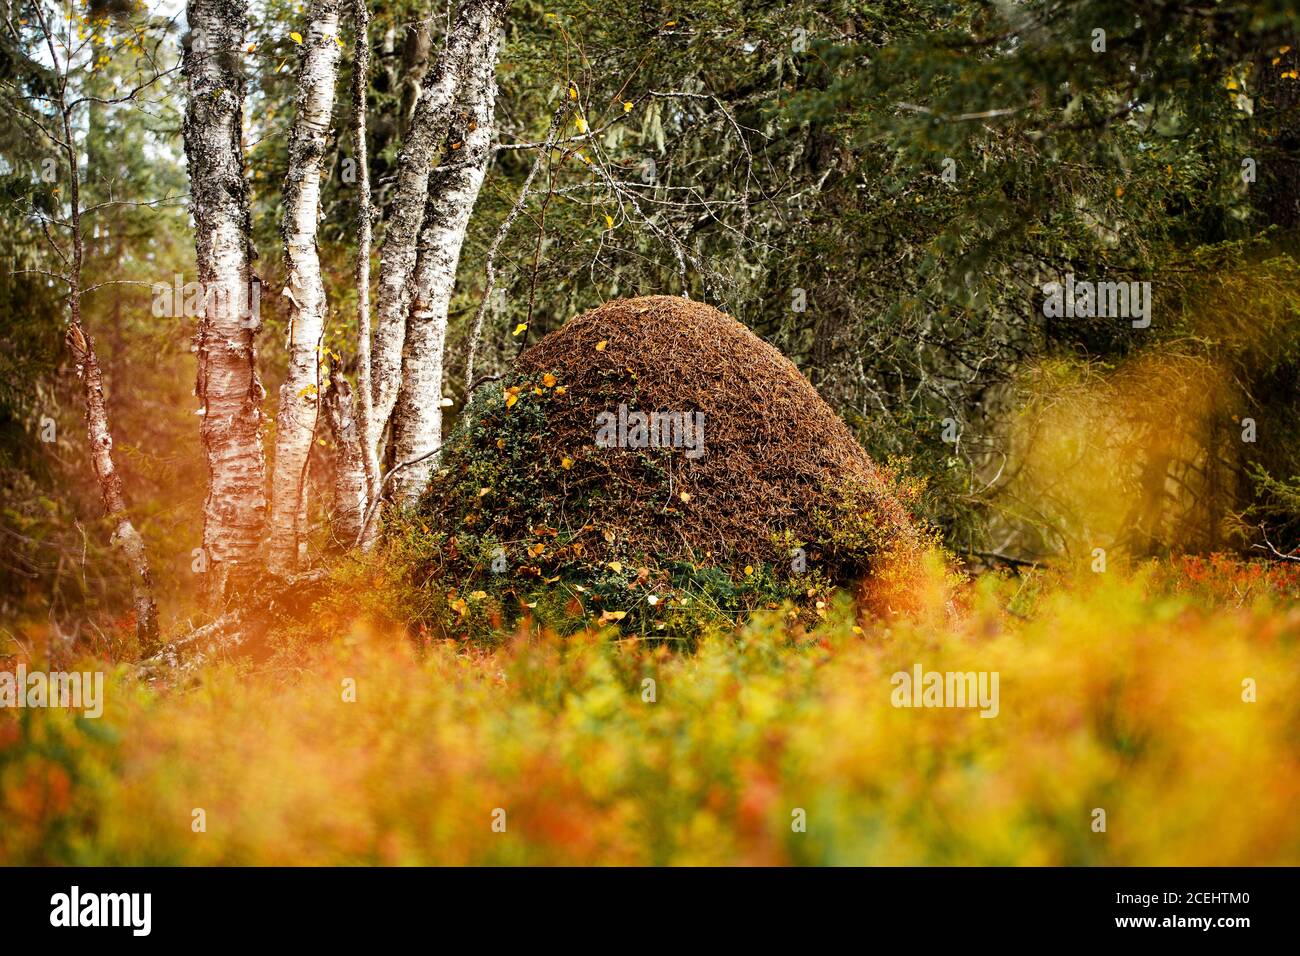 Eine große Ameise brütet in einem Nadelwald in Nordfinnland. Stockfoto